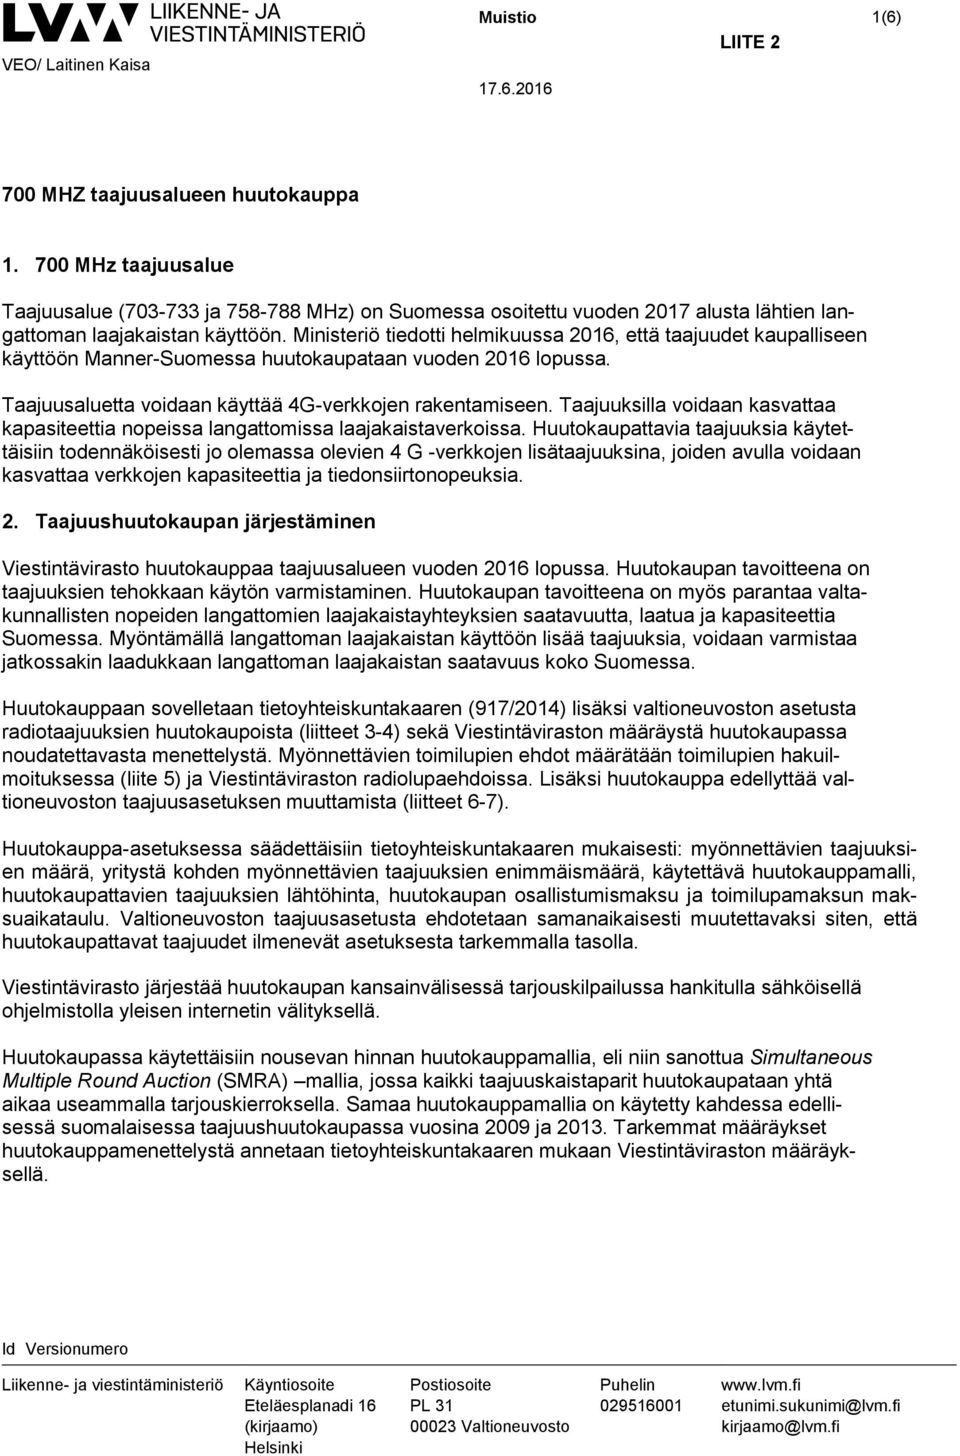 Ministeriö tiedotti helmikuussa 2016, että taajuudet kaupalliseen käyttöön Manner-Suomessa huutokaupataan vuoden 2016 lopussa. Taajuusaluetta voidaan käyttää 4G-verkkojen rakentamiseen.